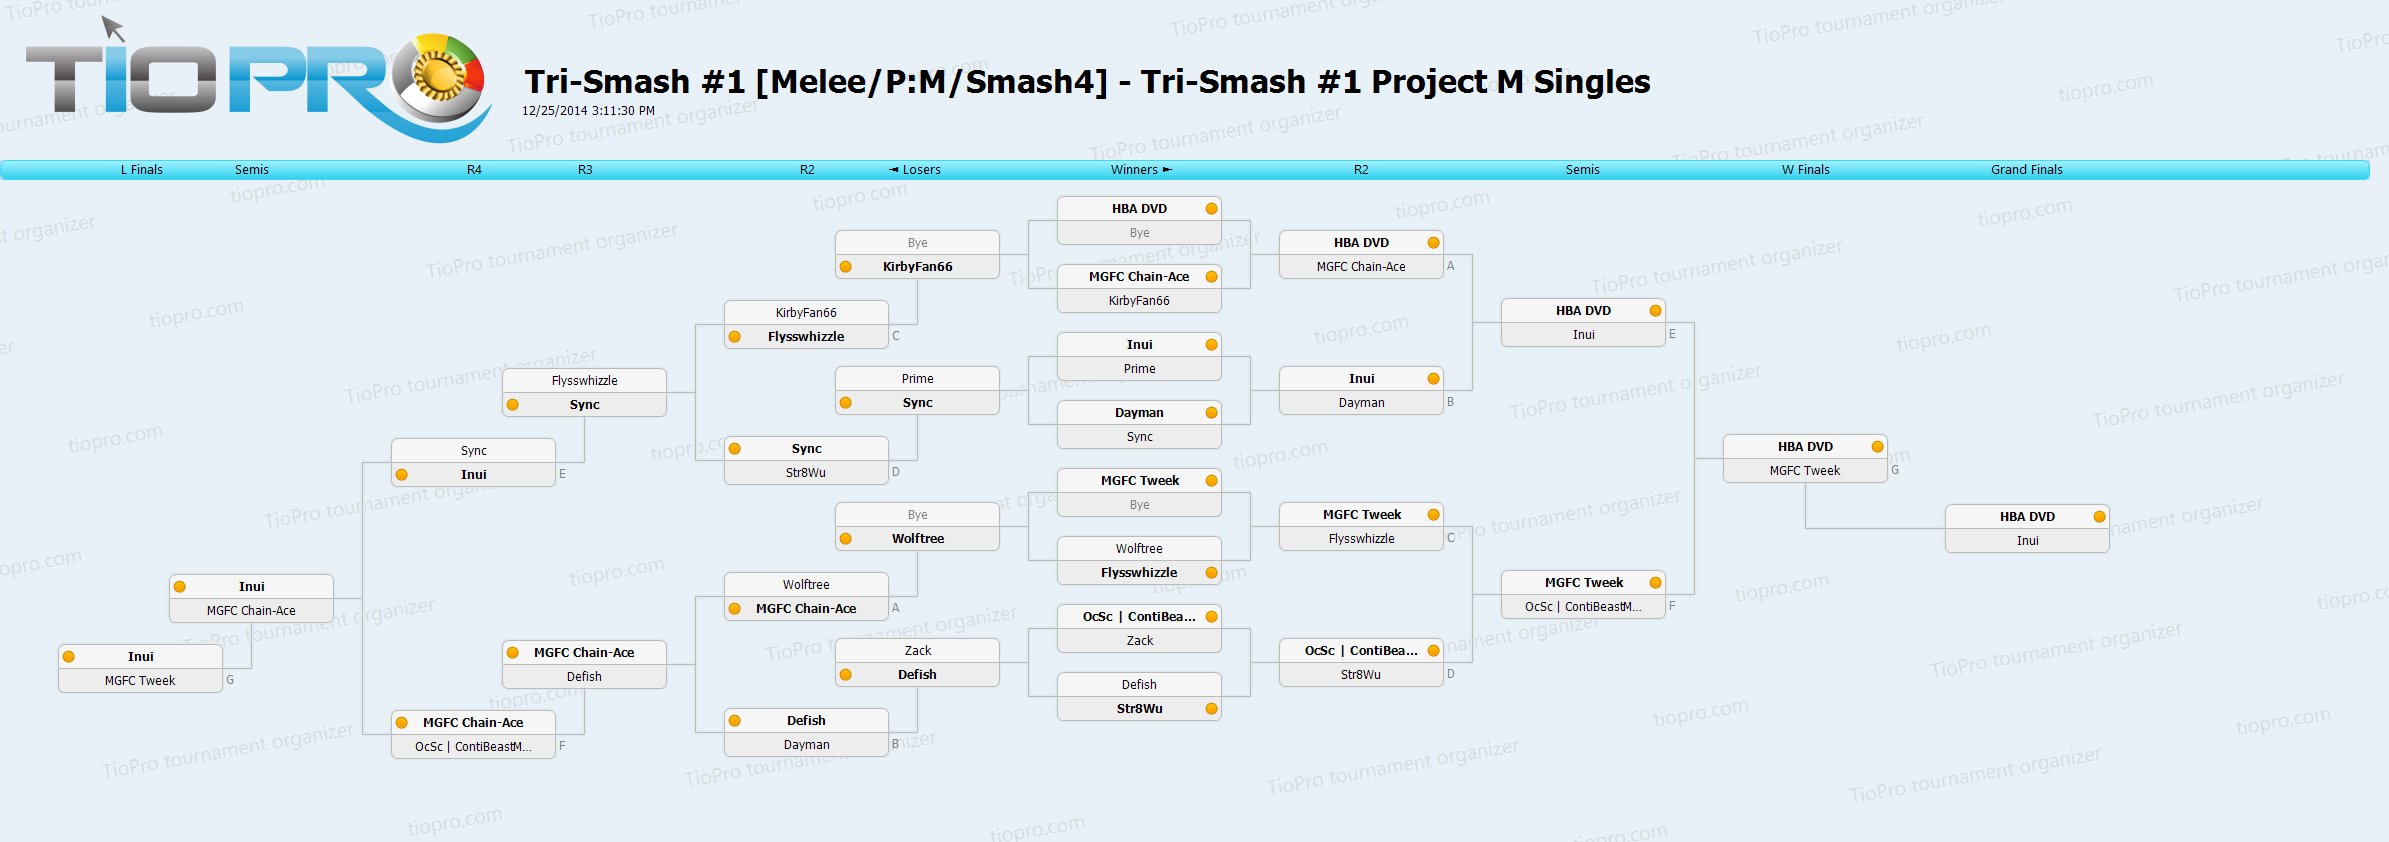 Tri-Smash #1 Project M Singles